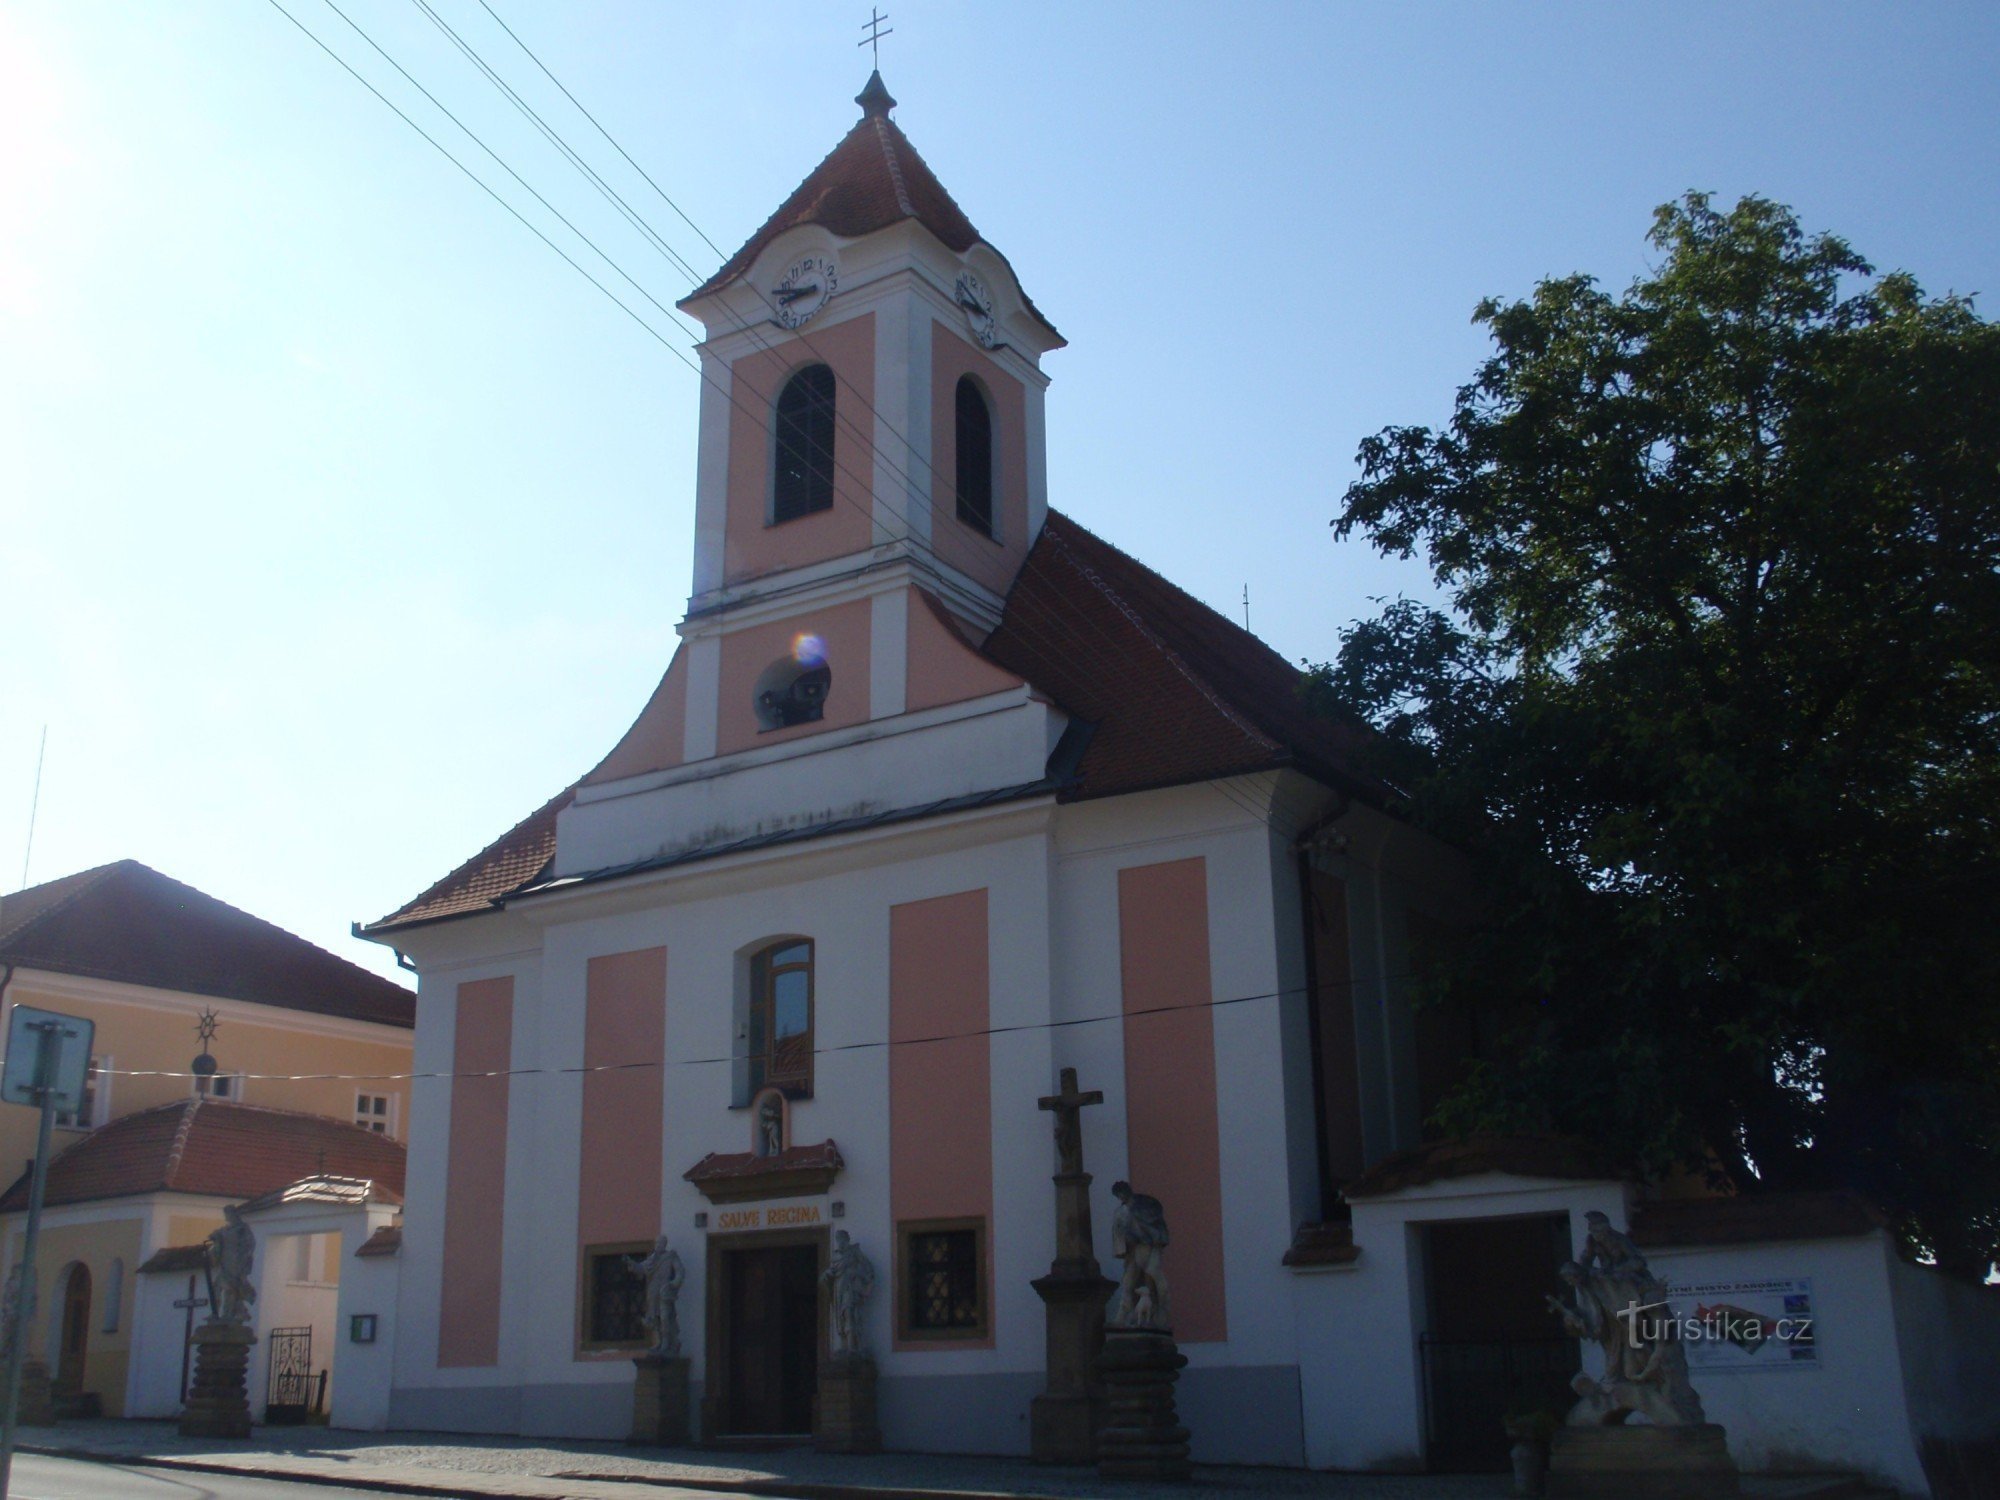 Паломницький костел св. Анни в Жарошицях